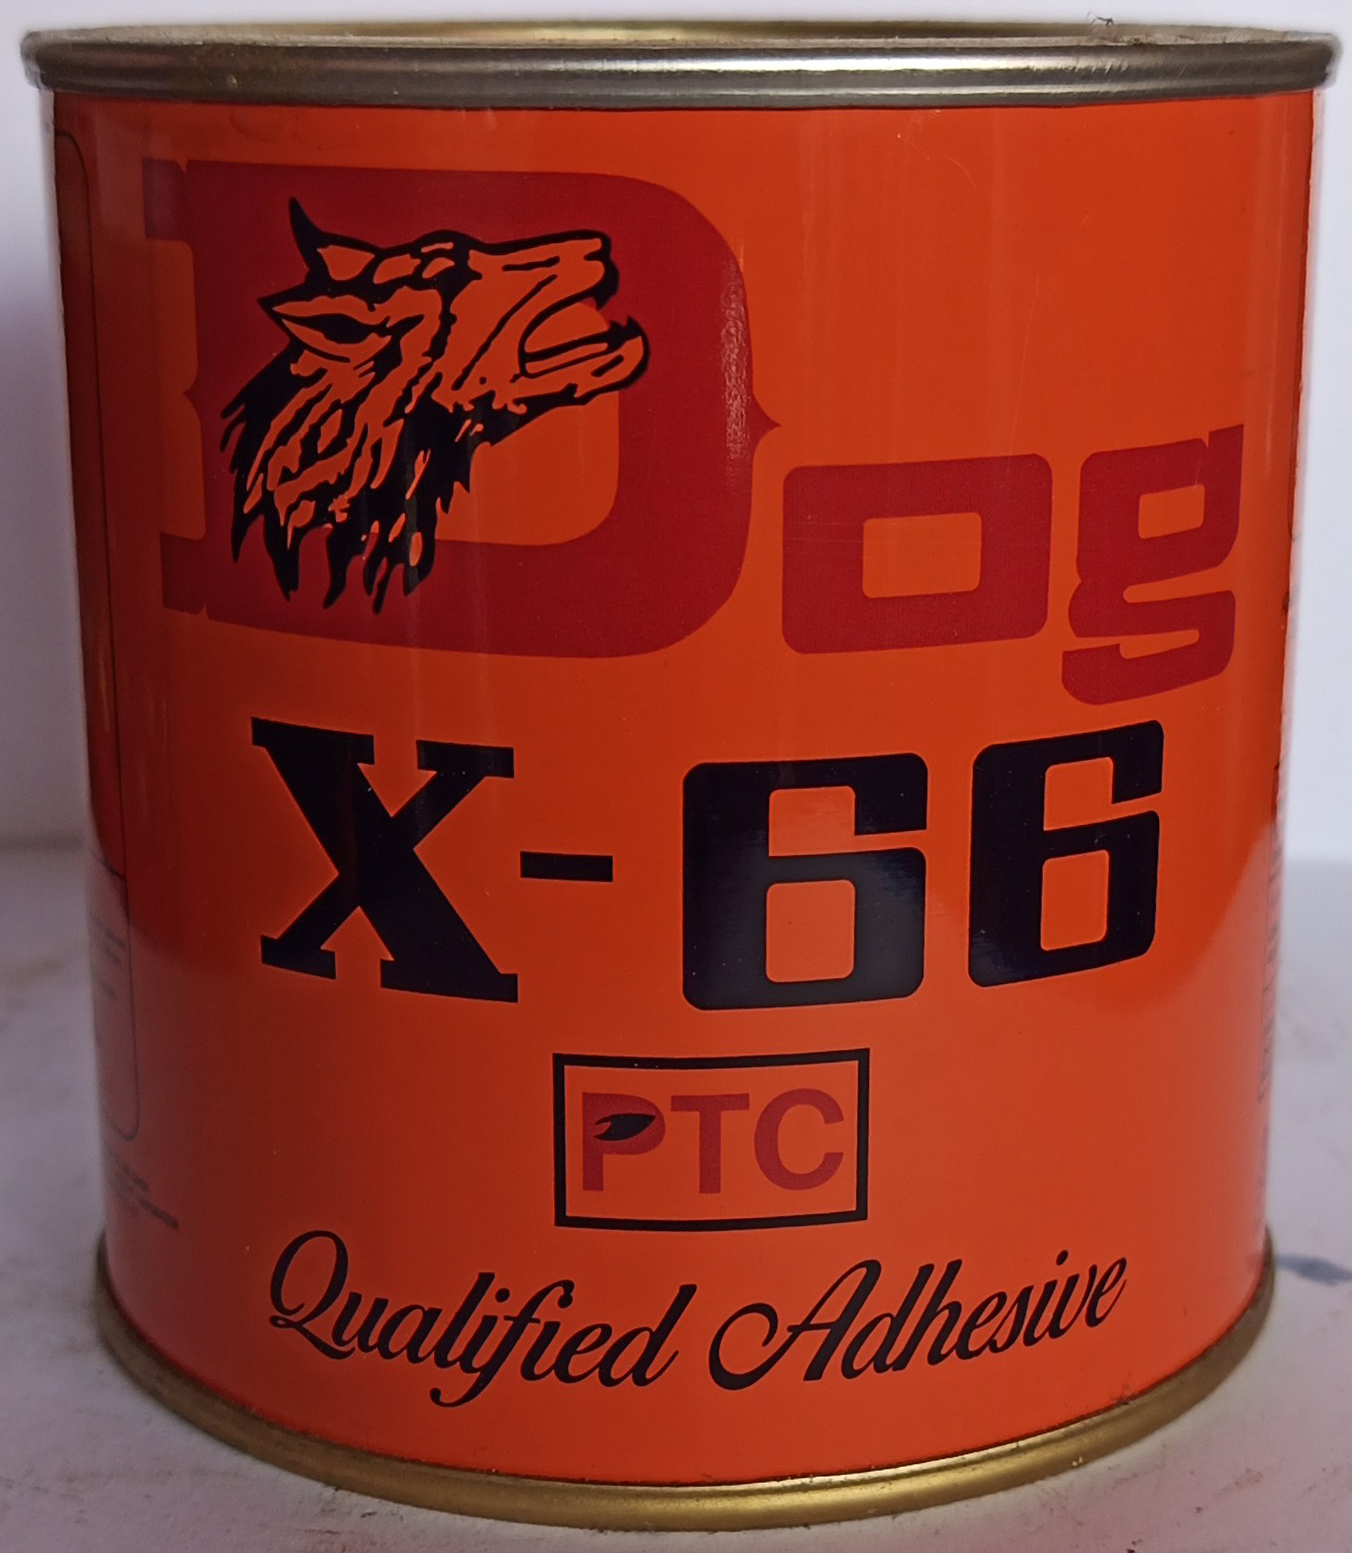 Keo Dog X-66